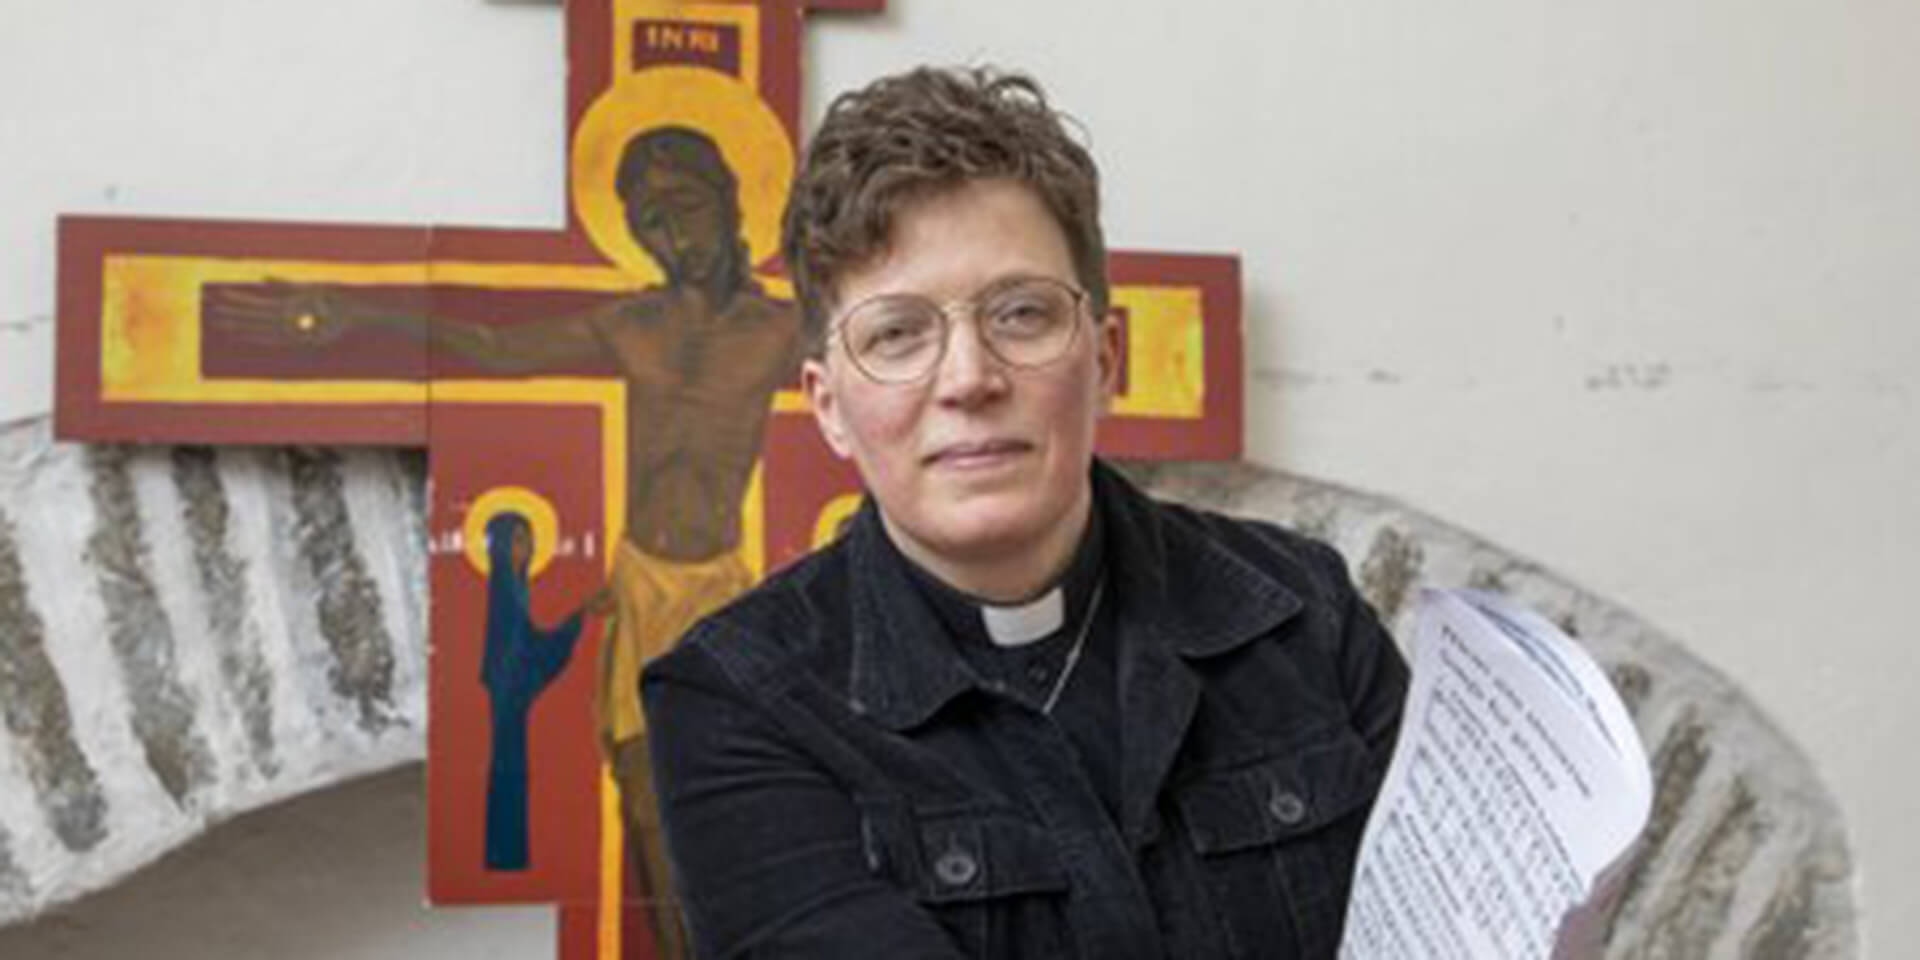 Pfarrerin Rev. Annely Neame, Leiterin des Seelsorgeteams und Projektmanagerin für „Mission 112“ im Konsistorium der EELK